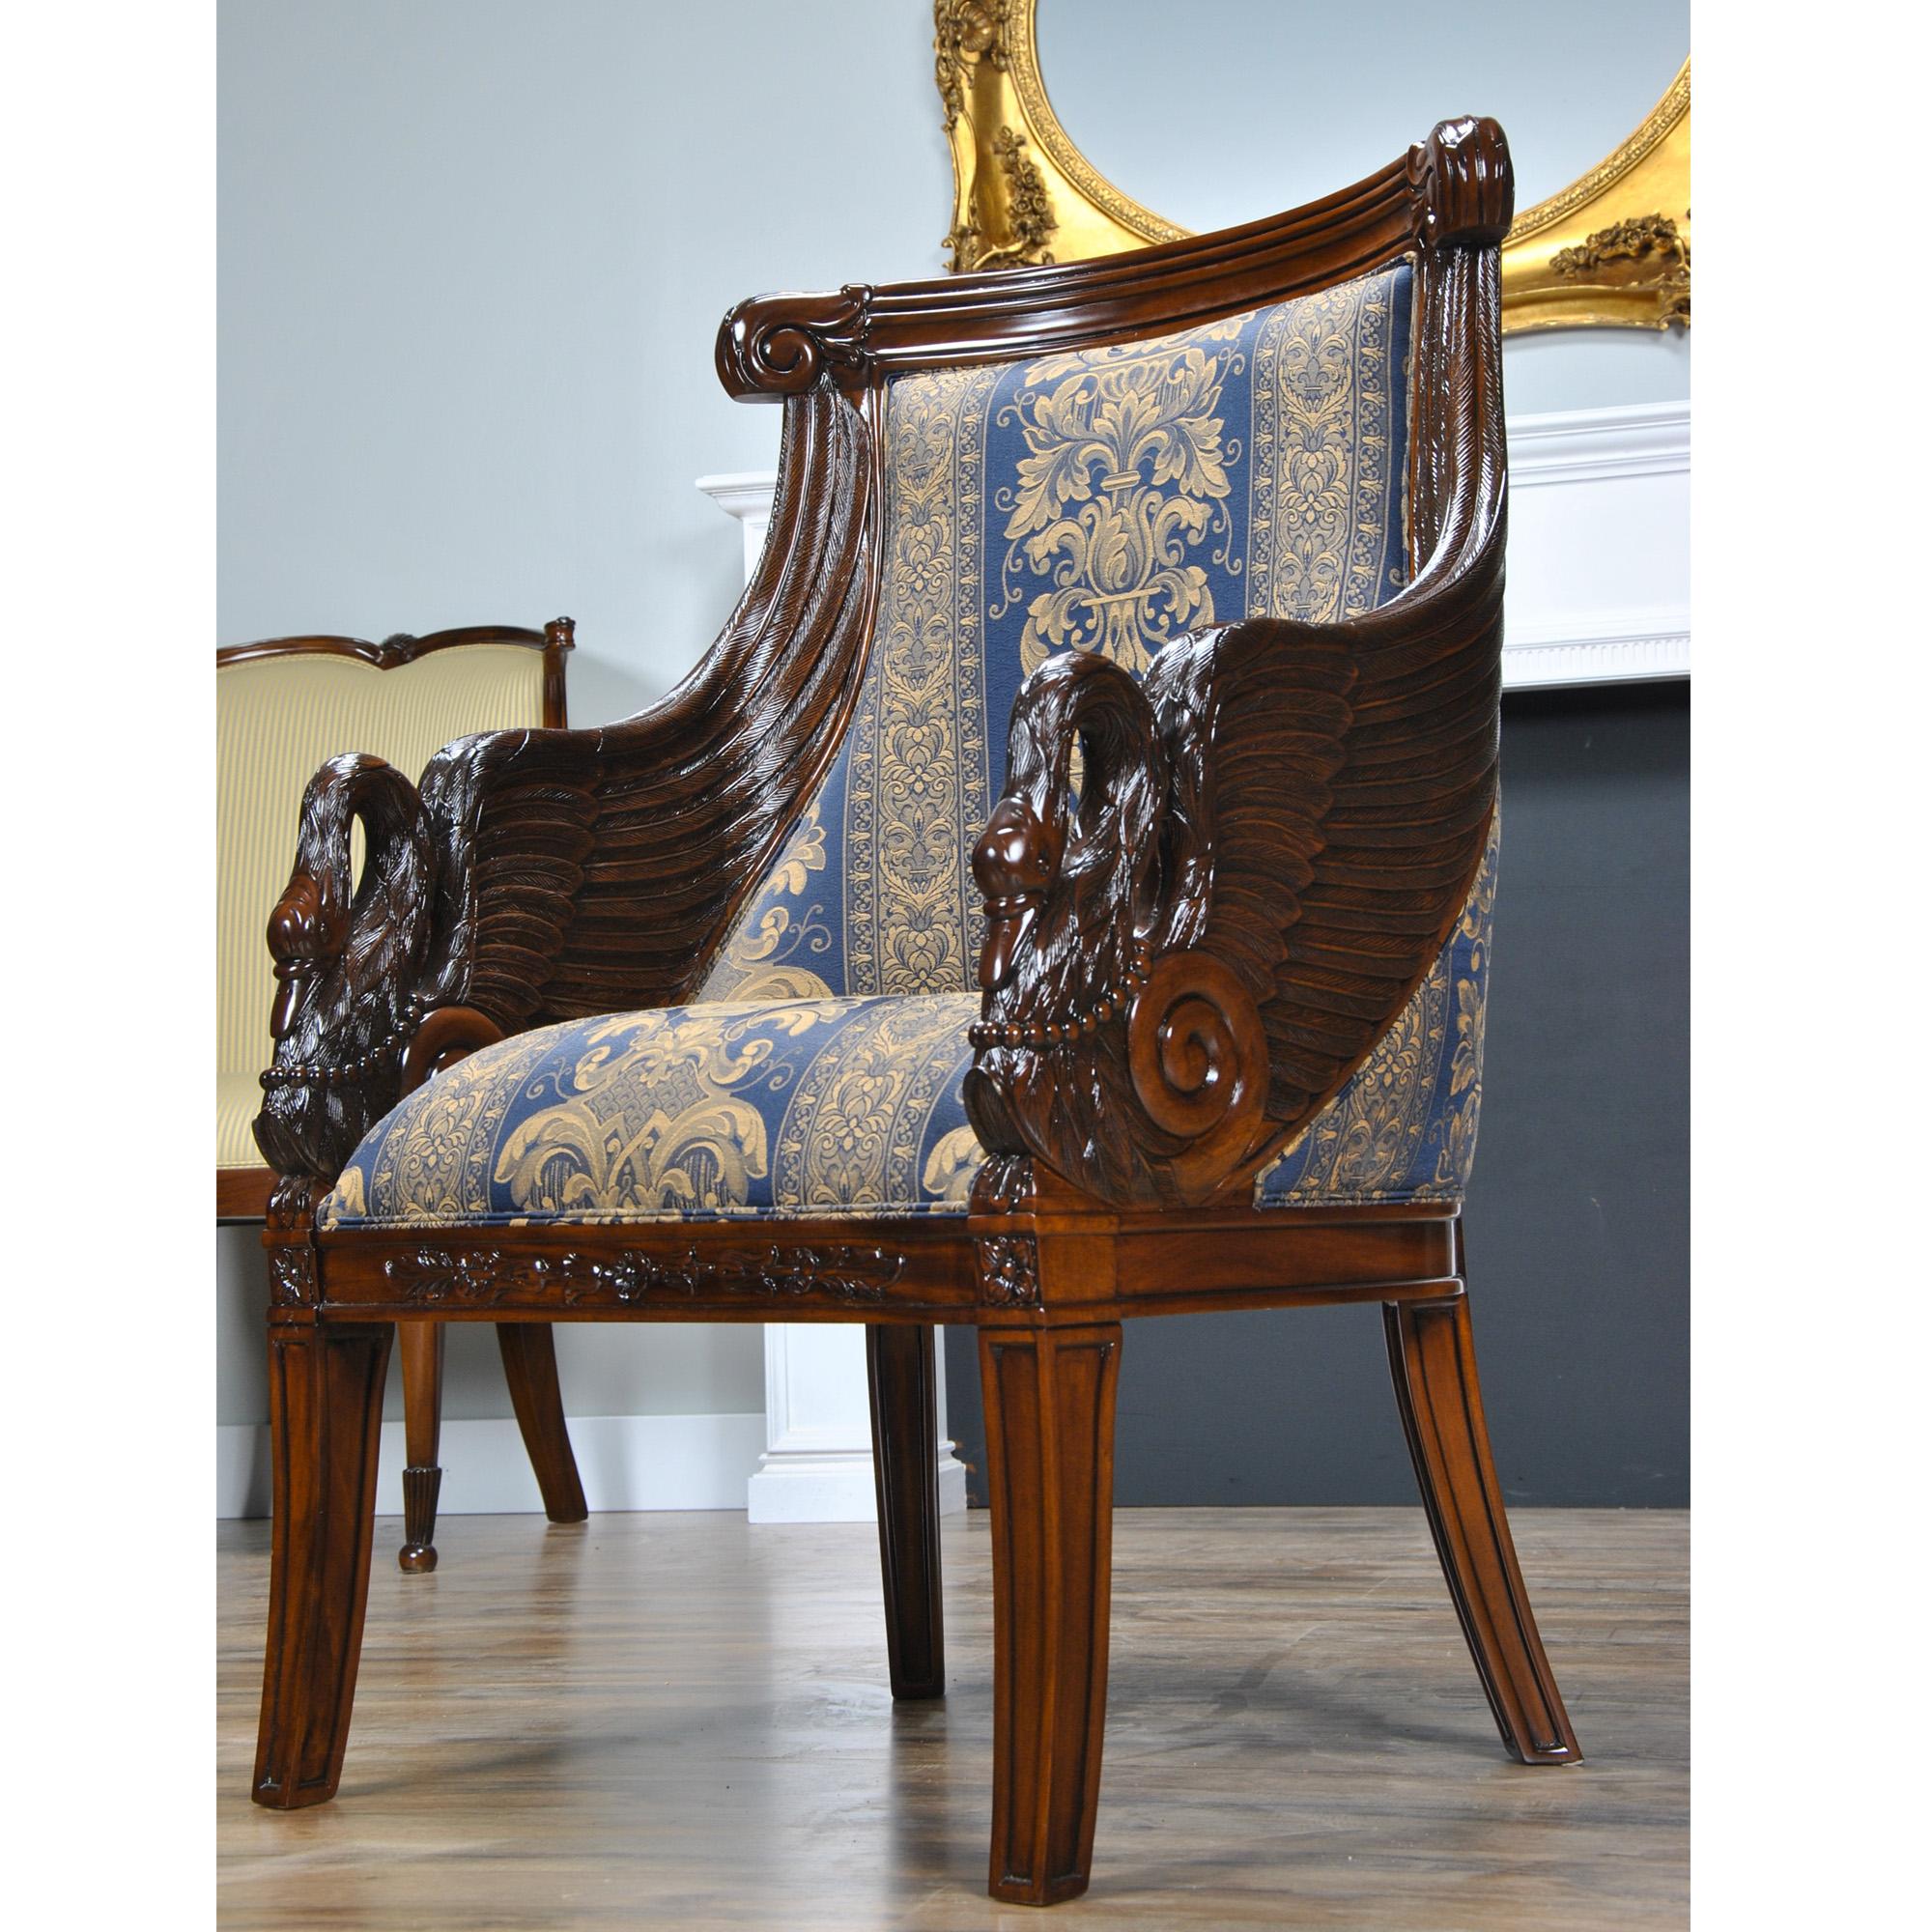 Dieser hochwertige Mahagoni-Schwanen-Sessel  von Niagara Furniture mit seinen beeindruckenden handgeschnitzten Details aus massivem Mahagoni könnte der Mittelpunkt jeder Einrichtung sein. Ein tolles Aussehen mit einem soliden und bequemen Rahmen.